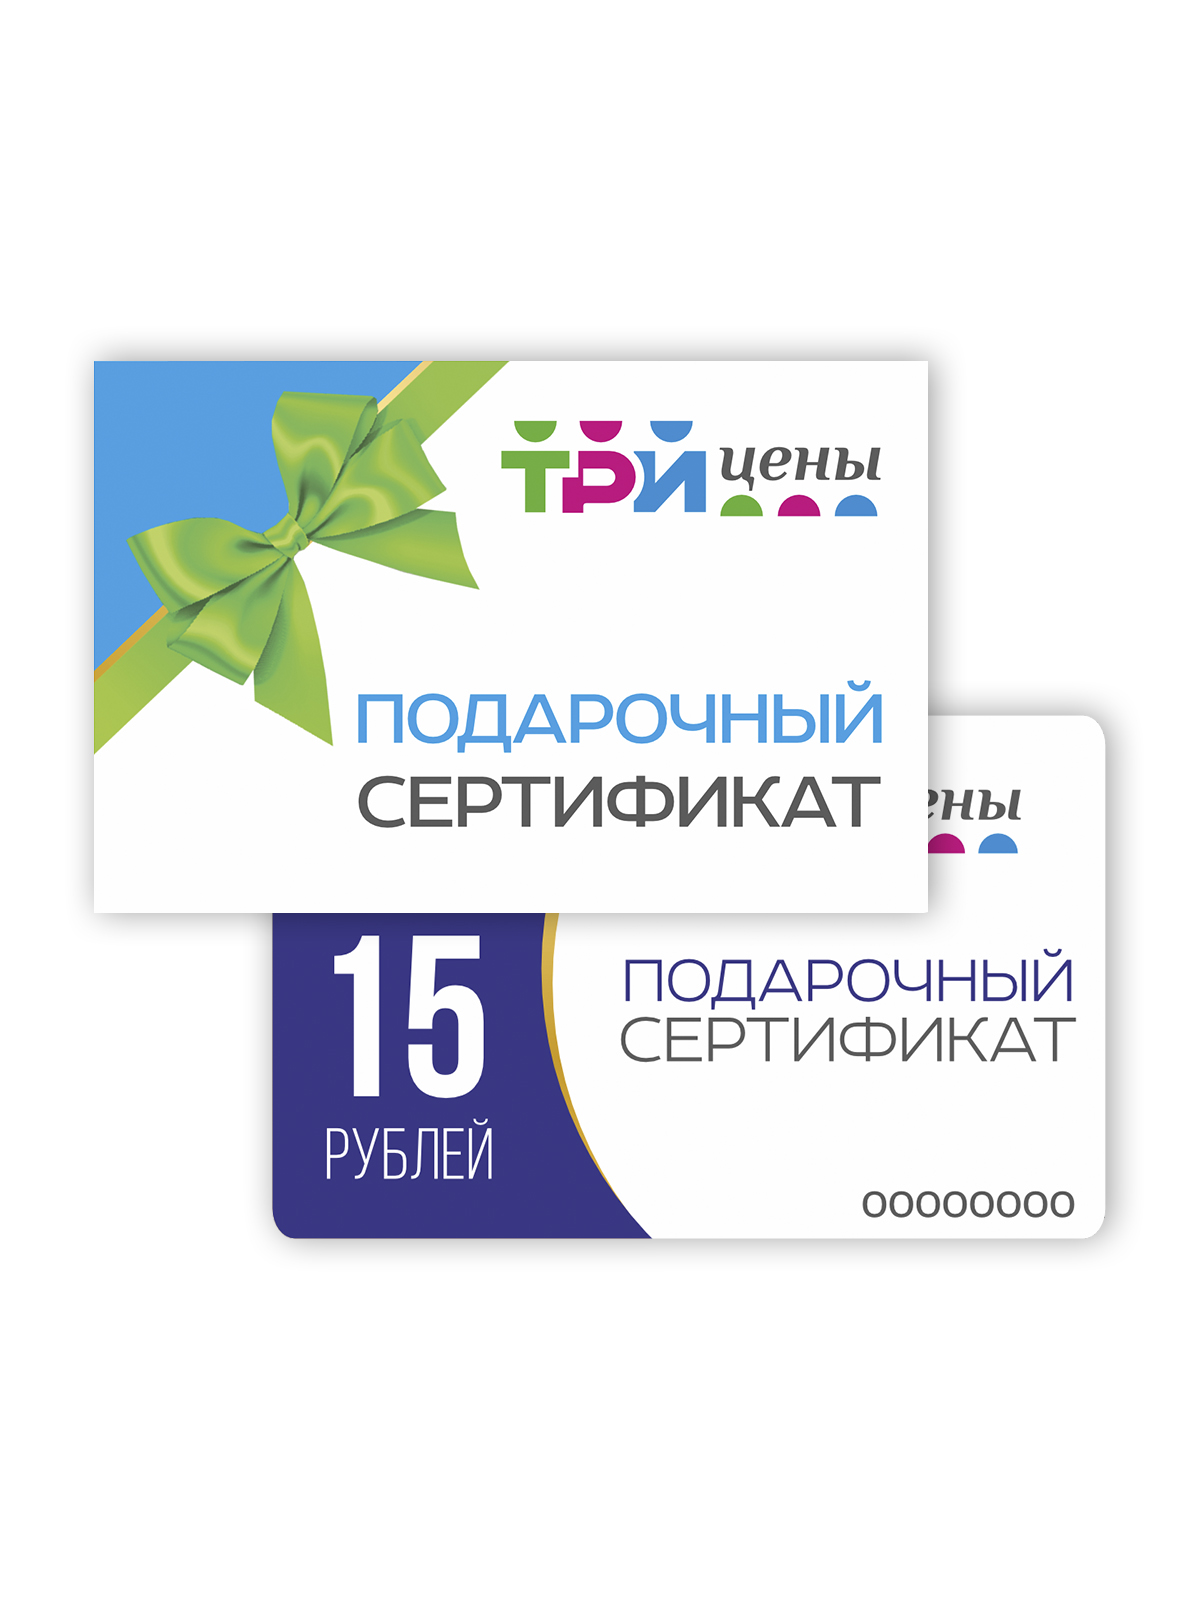 Подарочный сертификат на сумму 15 рублей